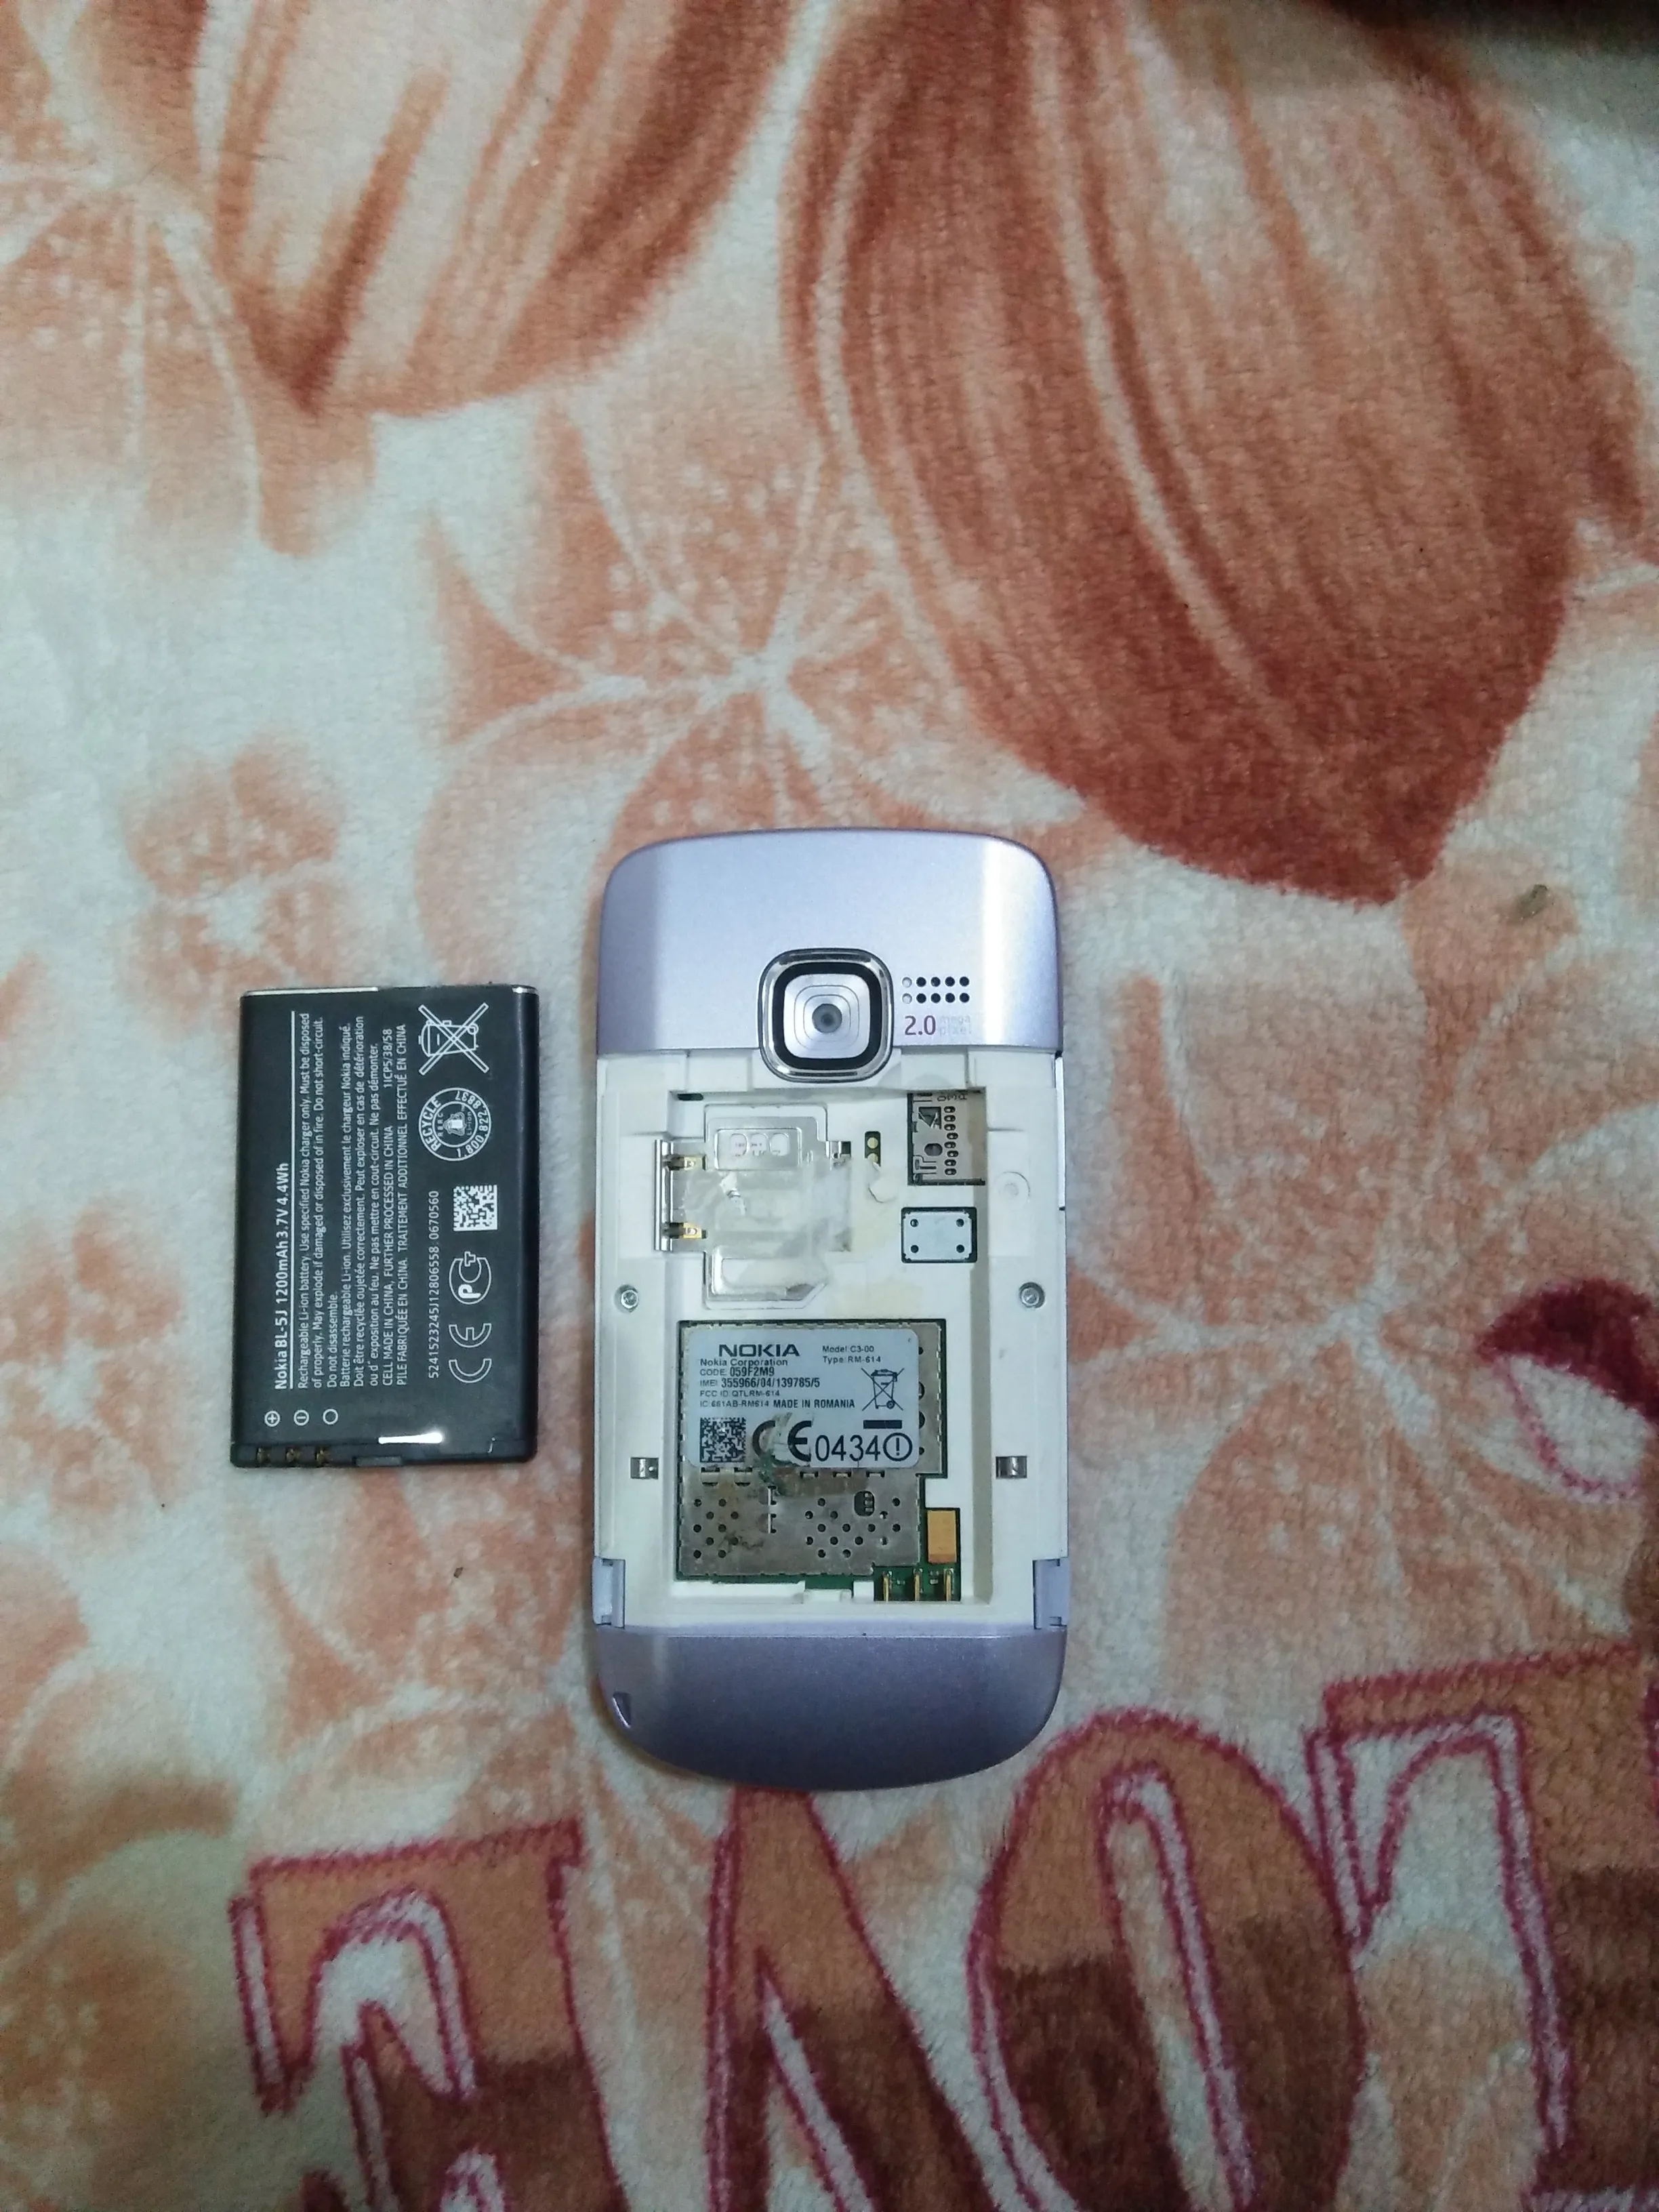 Nokia c3-00 wifi - photo 2